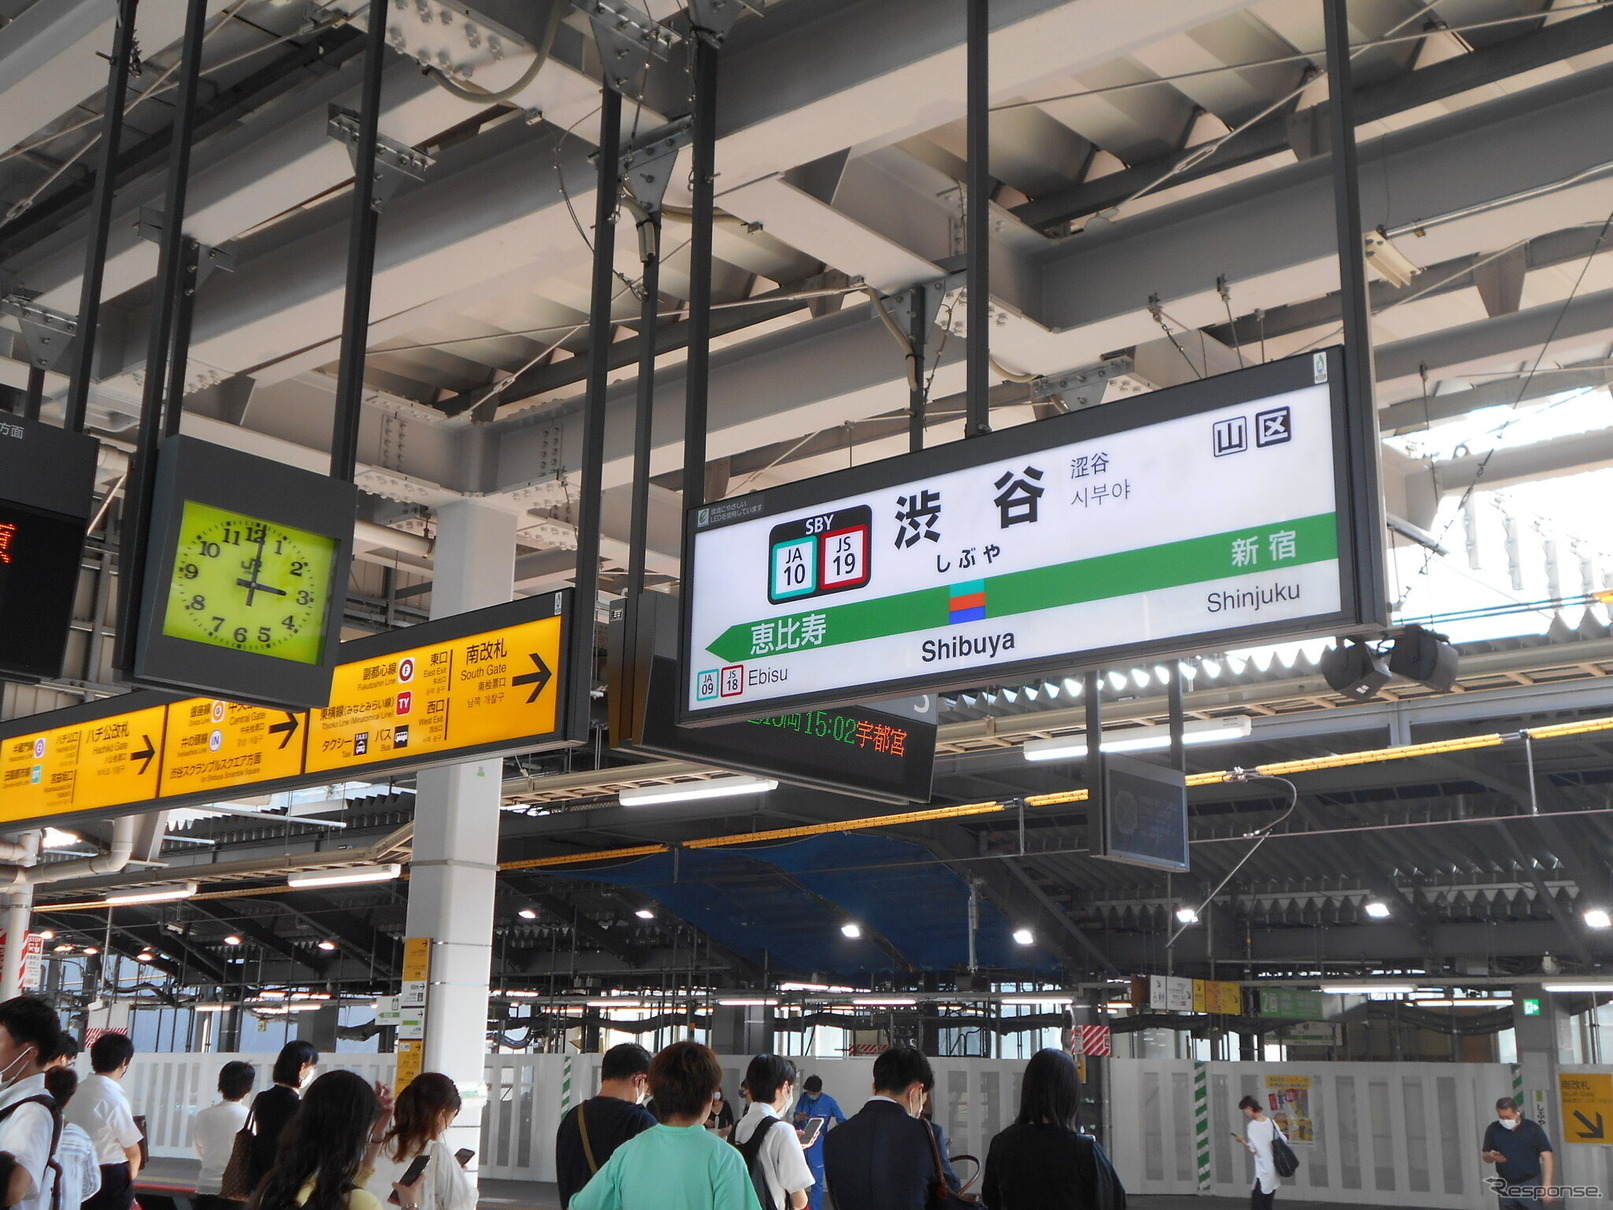 渋谷駅の埼京線ホーム。埼京線は山手線外回りの運休中、大崎～赤羽間で増発。同一線路を走る湘南新宿ラインは通常運行となる。